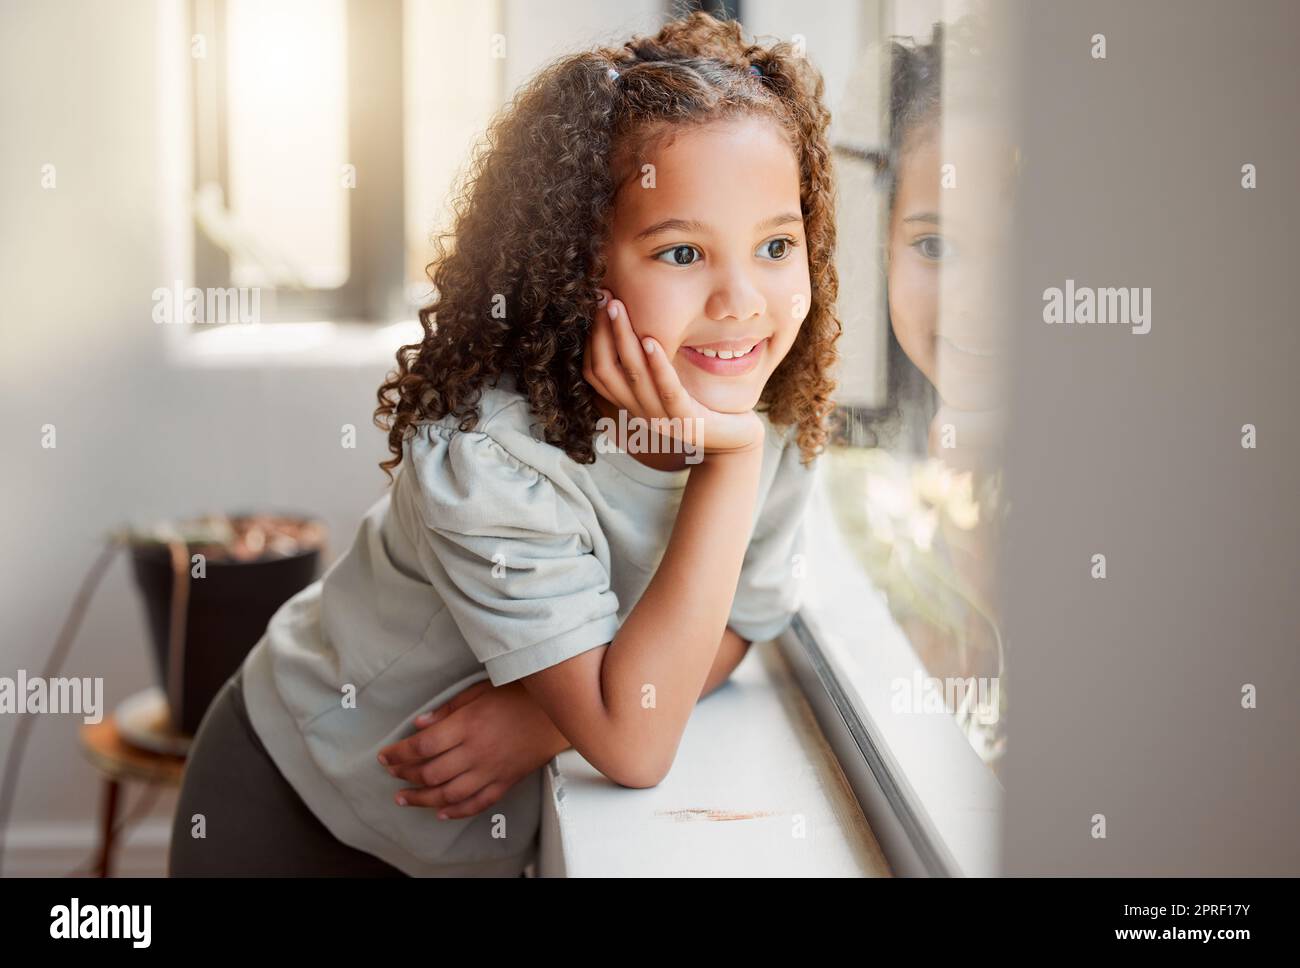 Ein kleines Mädchen träumt davon, draußen in der Sonne zu spielen, nach der Abriegelung, lächelnd und aus dem Fenster zu sehen. Ein kleines, süßes, glückliches Mädchen, das wartet, denkt und träumt, mit der Hand auf dem Kinn Stockfoto